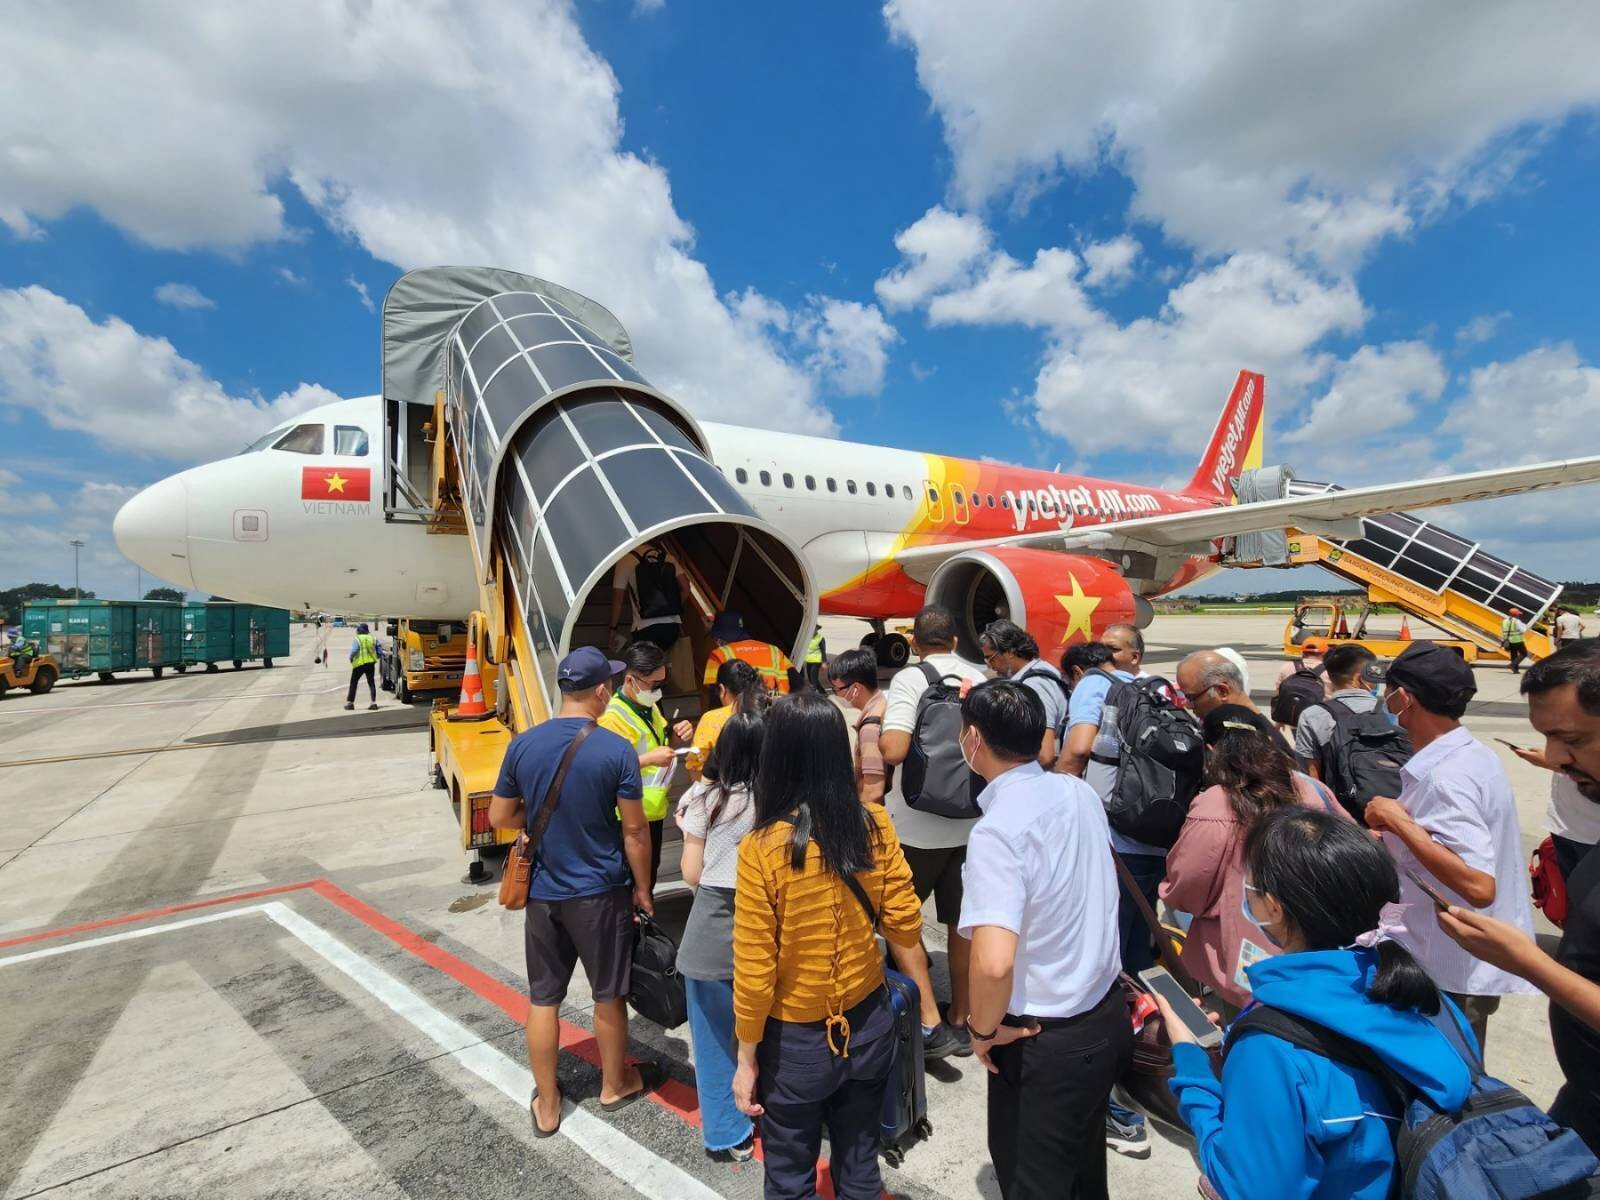 Cục trưởng Cục hàng không Việt Nam Đinh Việt Thắng cho biết, đến thời điểm này chưa có hãng hàng không nào xin tăng chuyến phục vụ dịp nghỉ lễ 2/9.